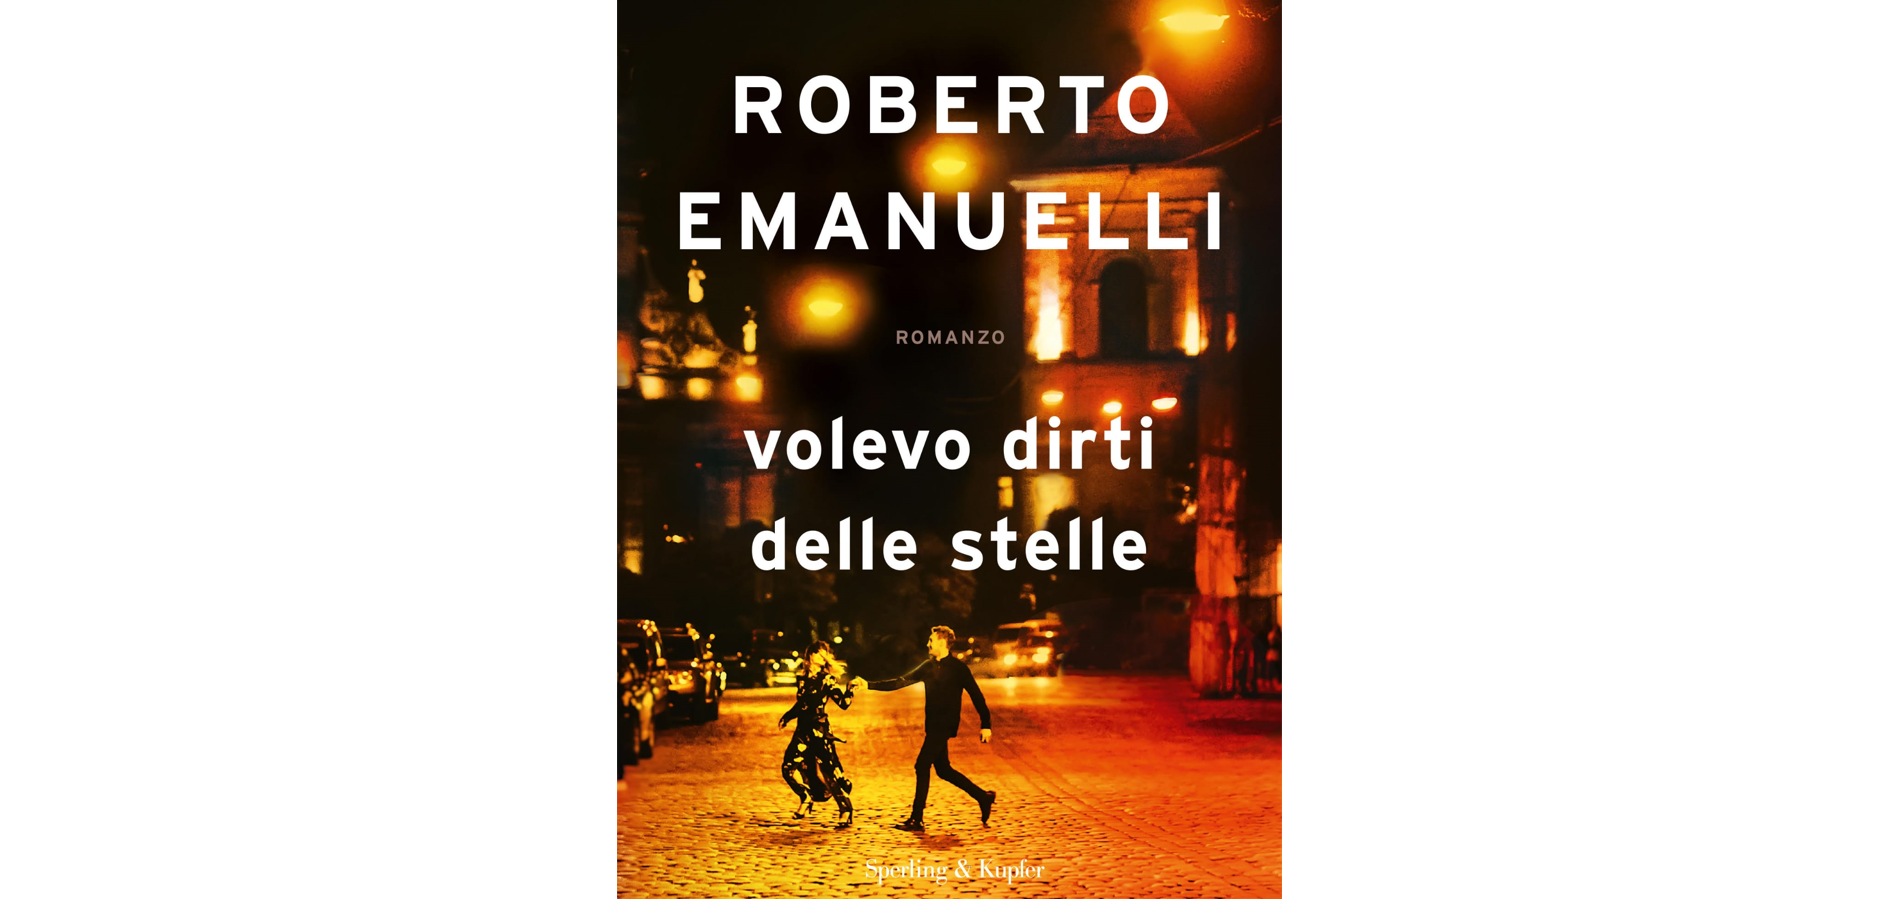 “Volevo dirti delle stelle”, il 28 settembre esce il nuovo romanzo dello scrittore bestseller Roberto Emanuelli